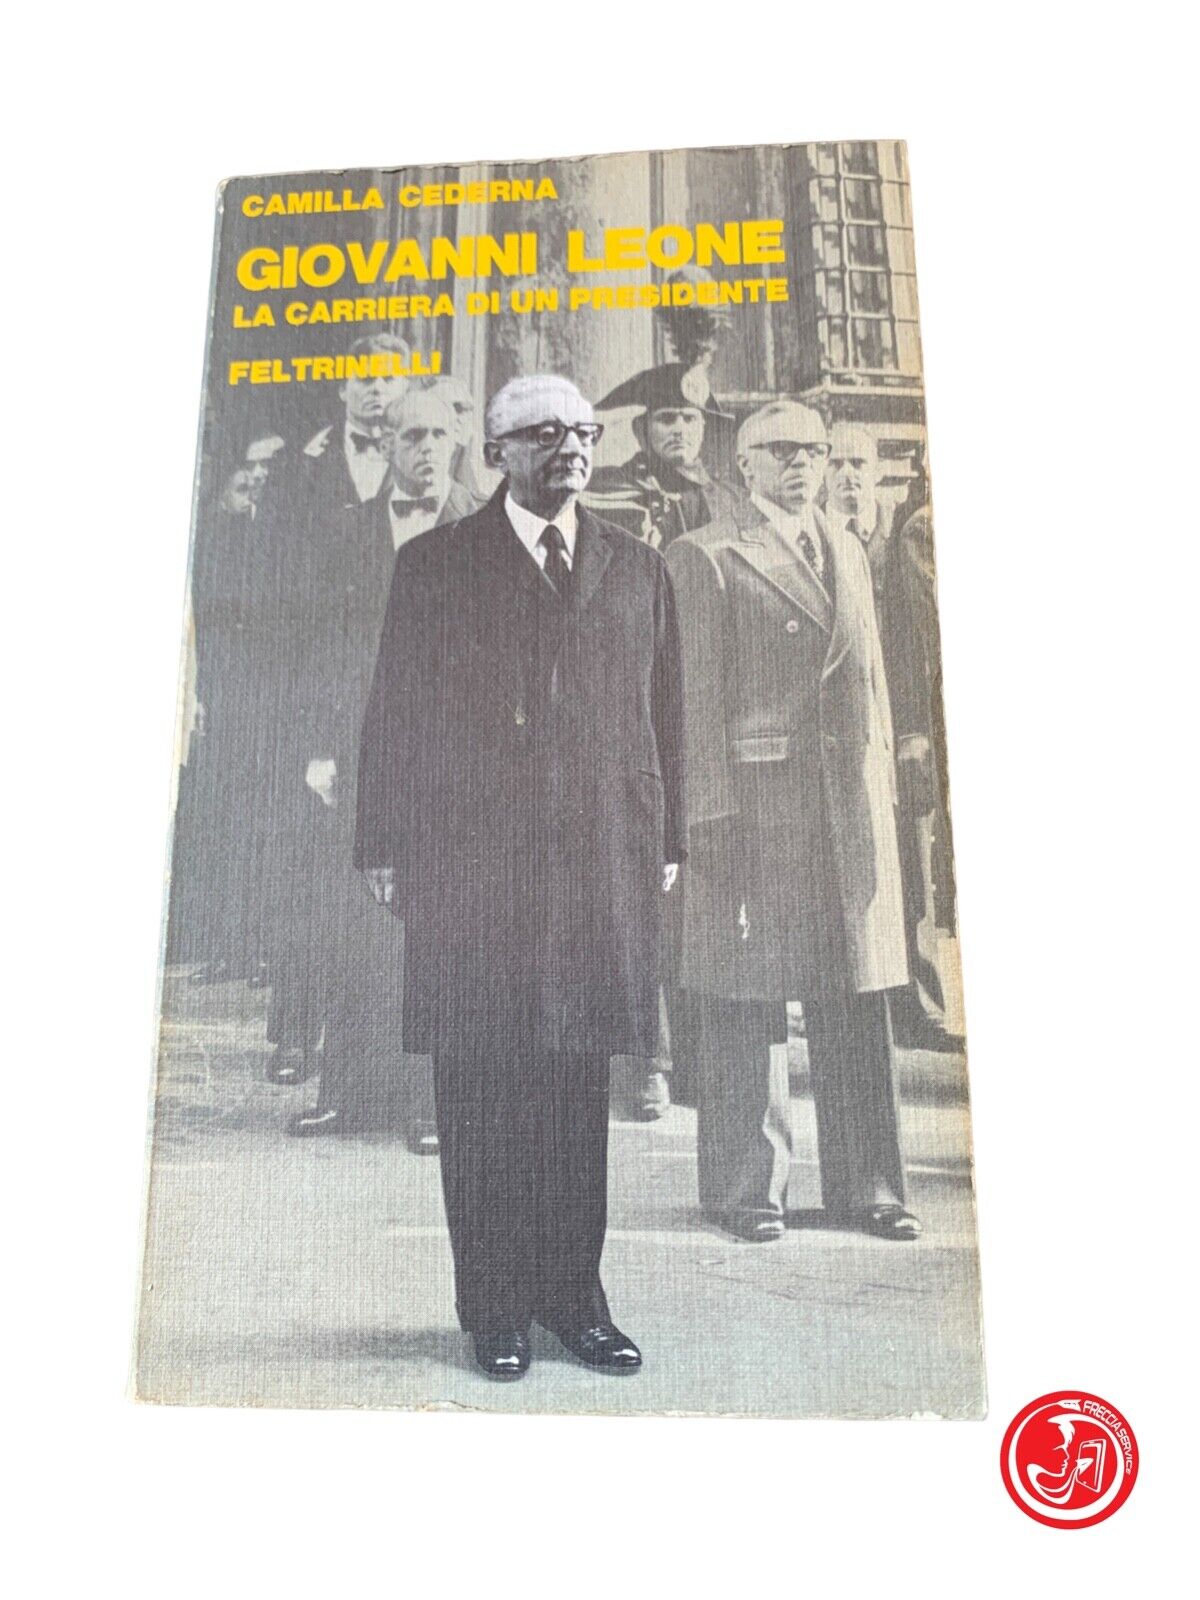 Giovanni Leone - Camilla Cederna - Feltrinelli 1978